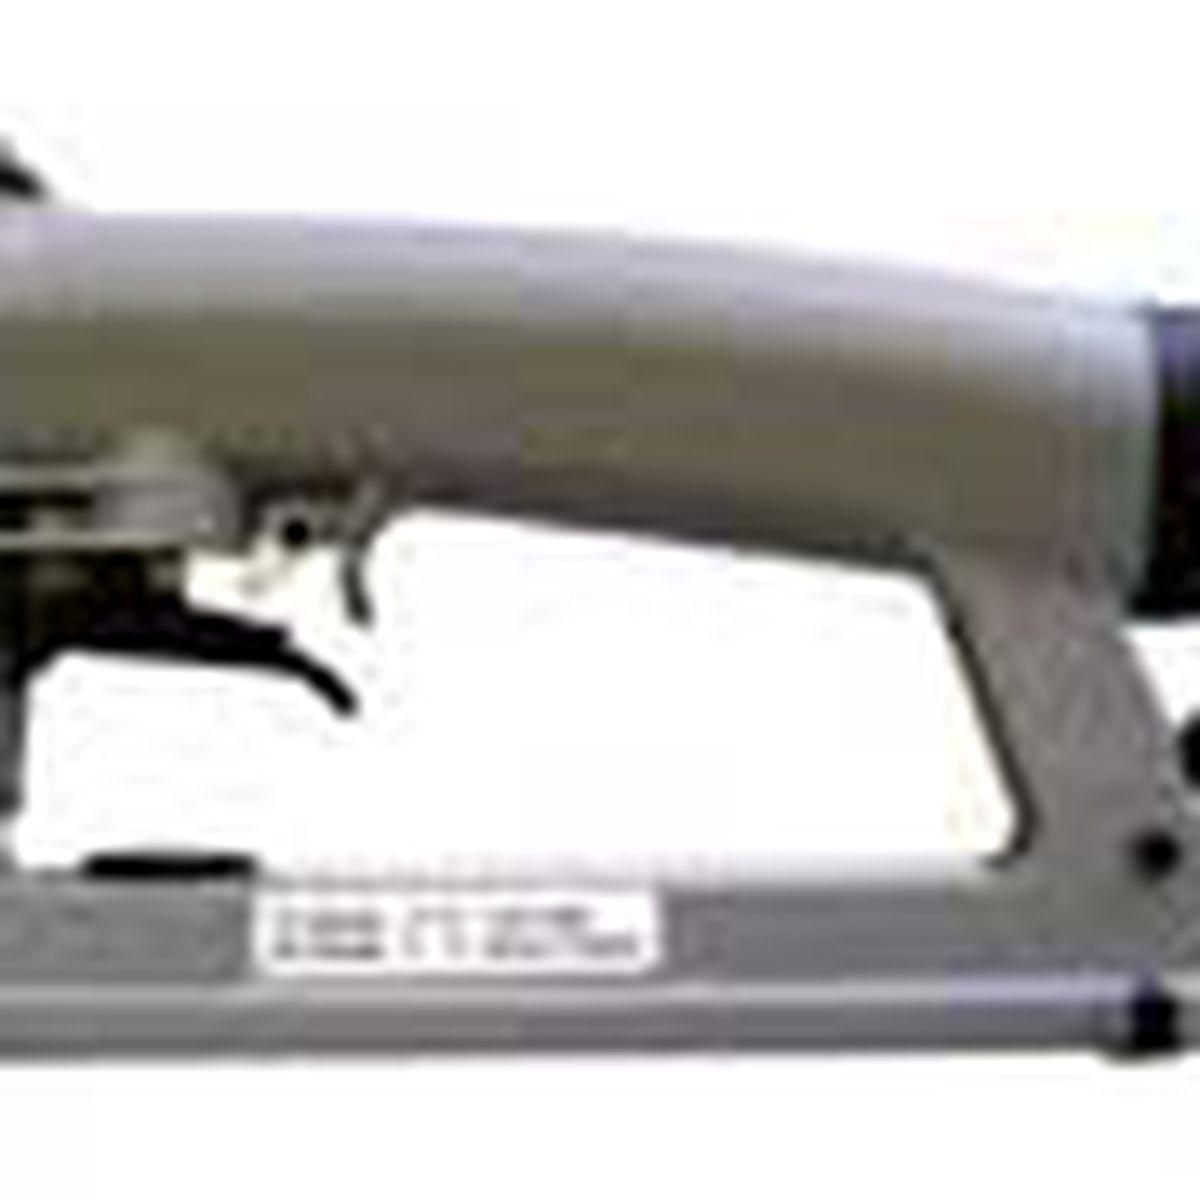 pneumatic staple gun